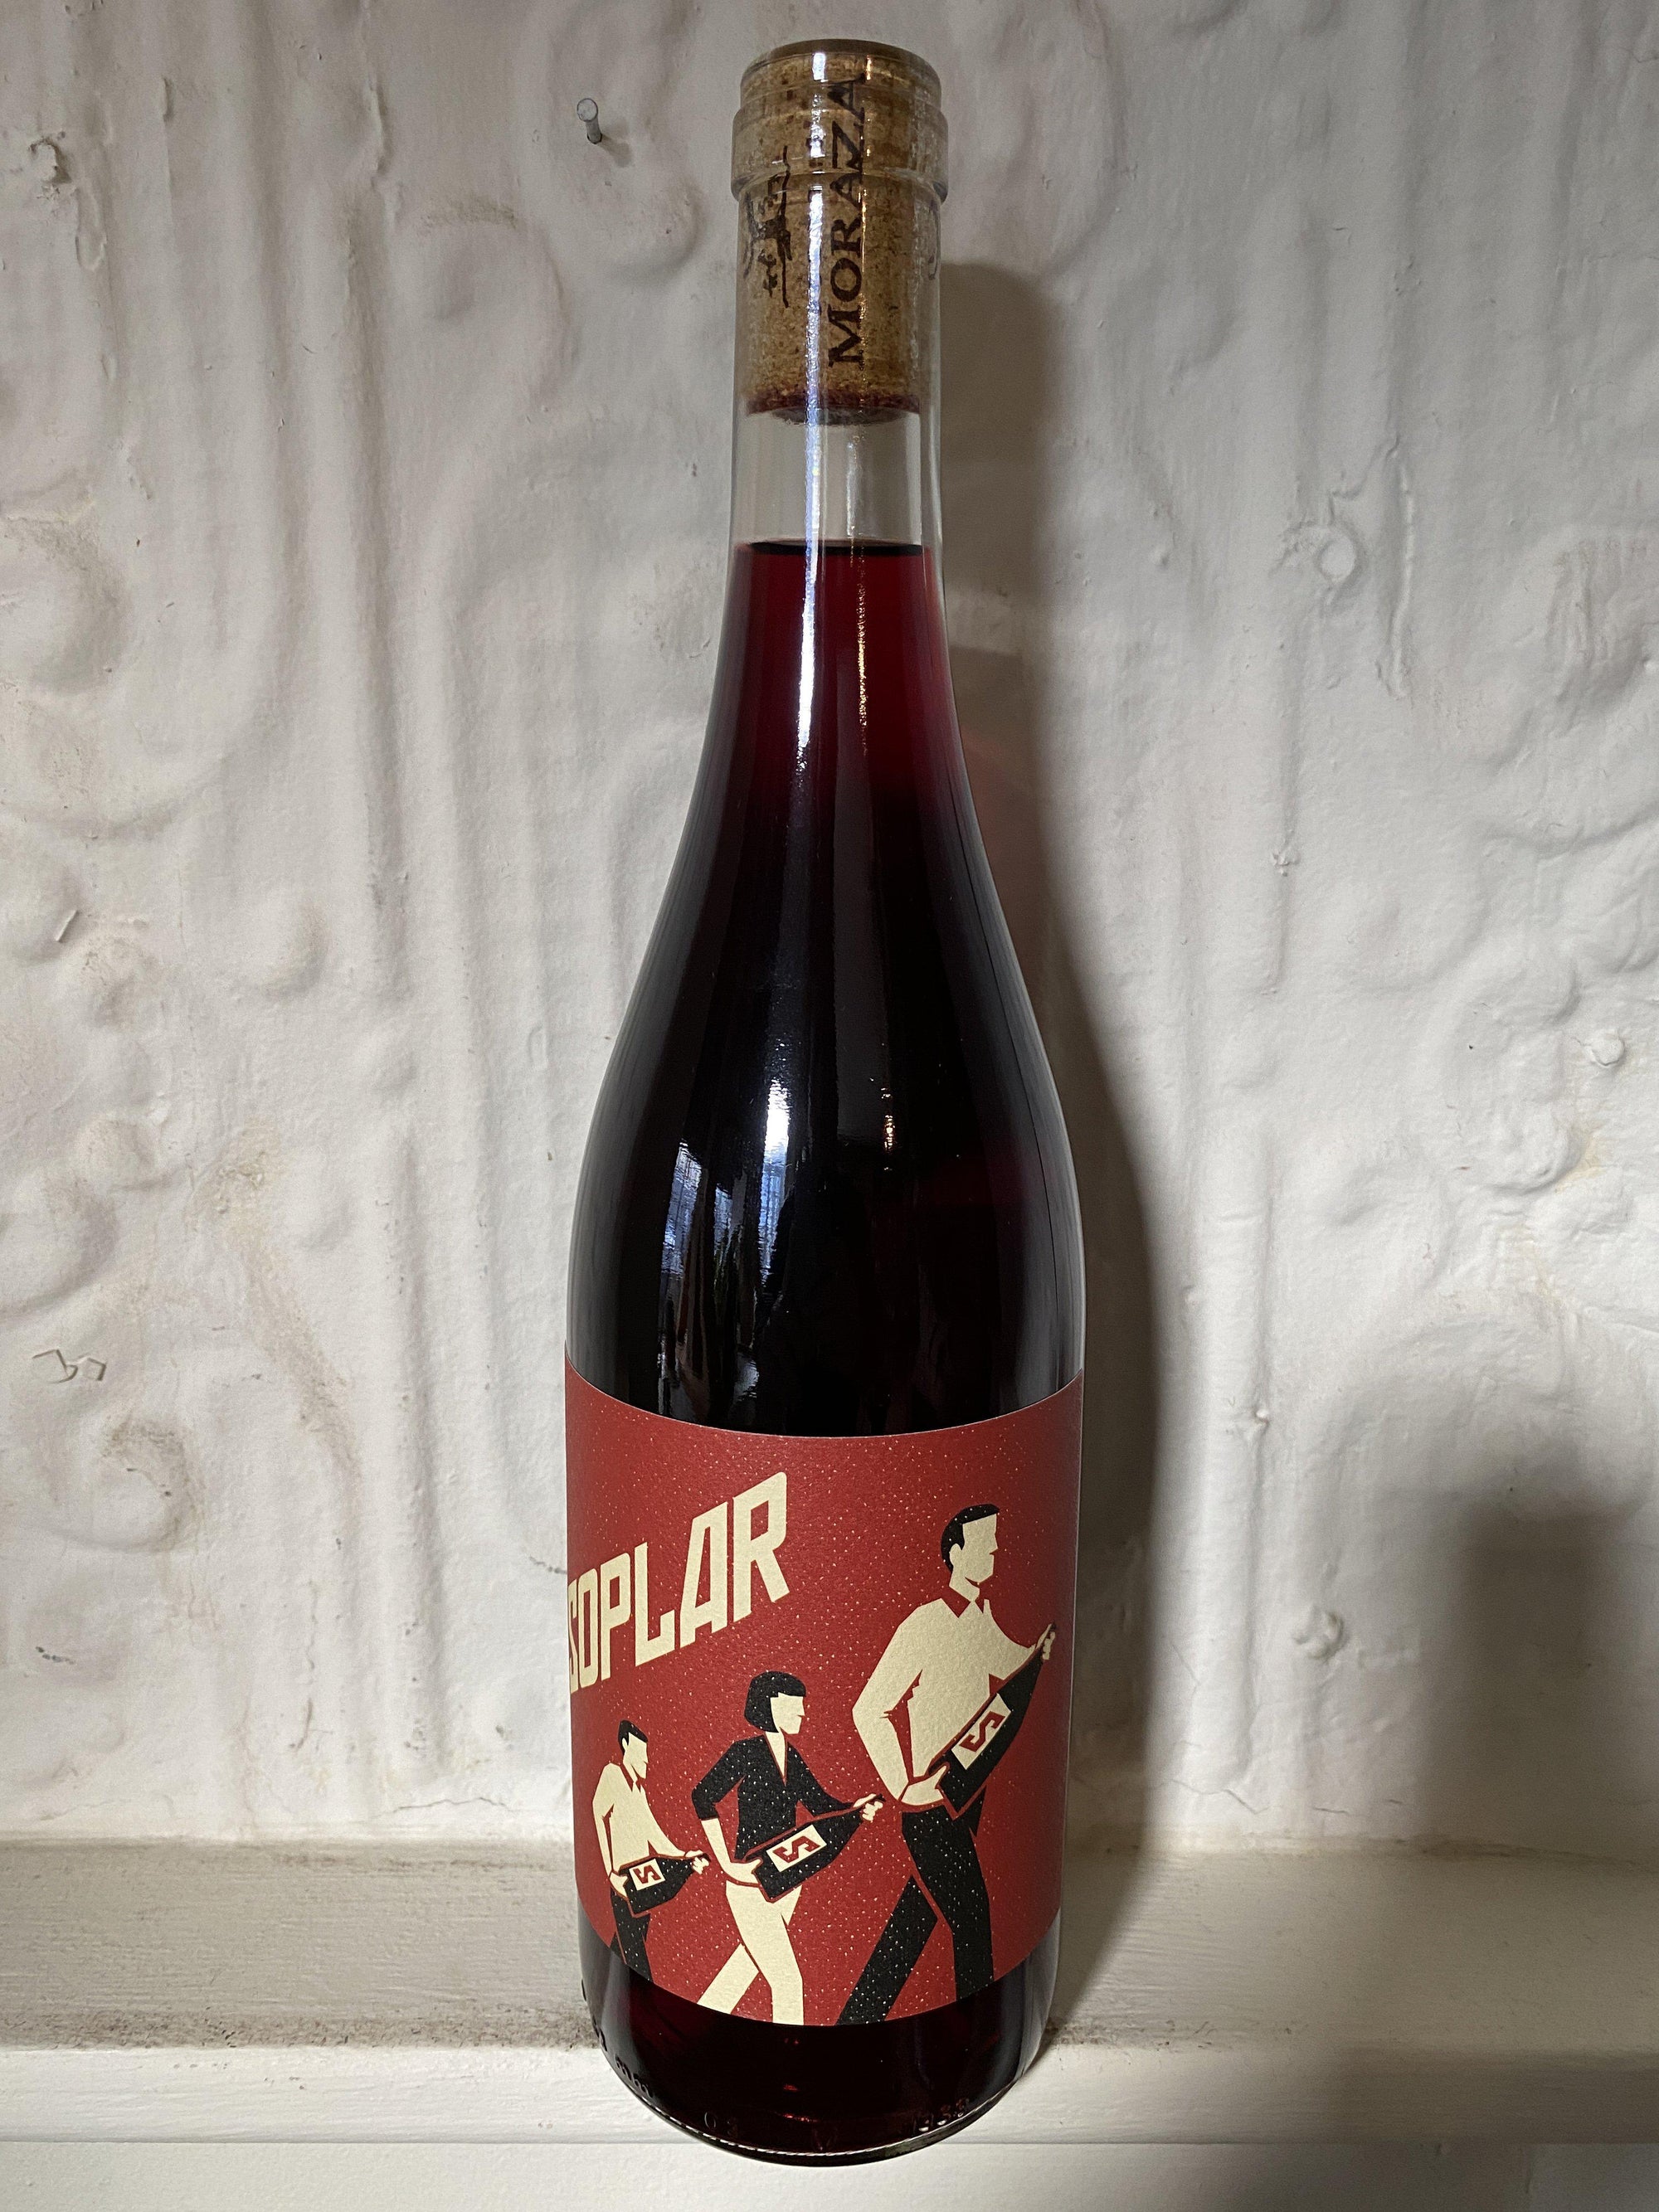 Rioja "Soplar", Moraza 2018 (Rioja, Spain)-Wine-Bibber & Bell